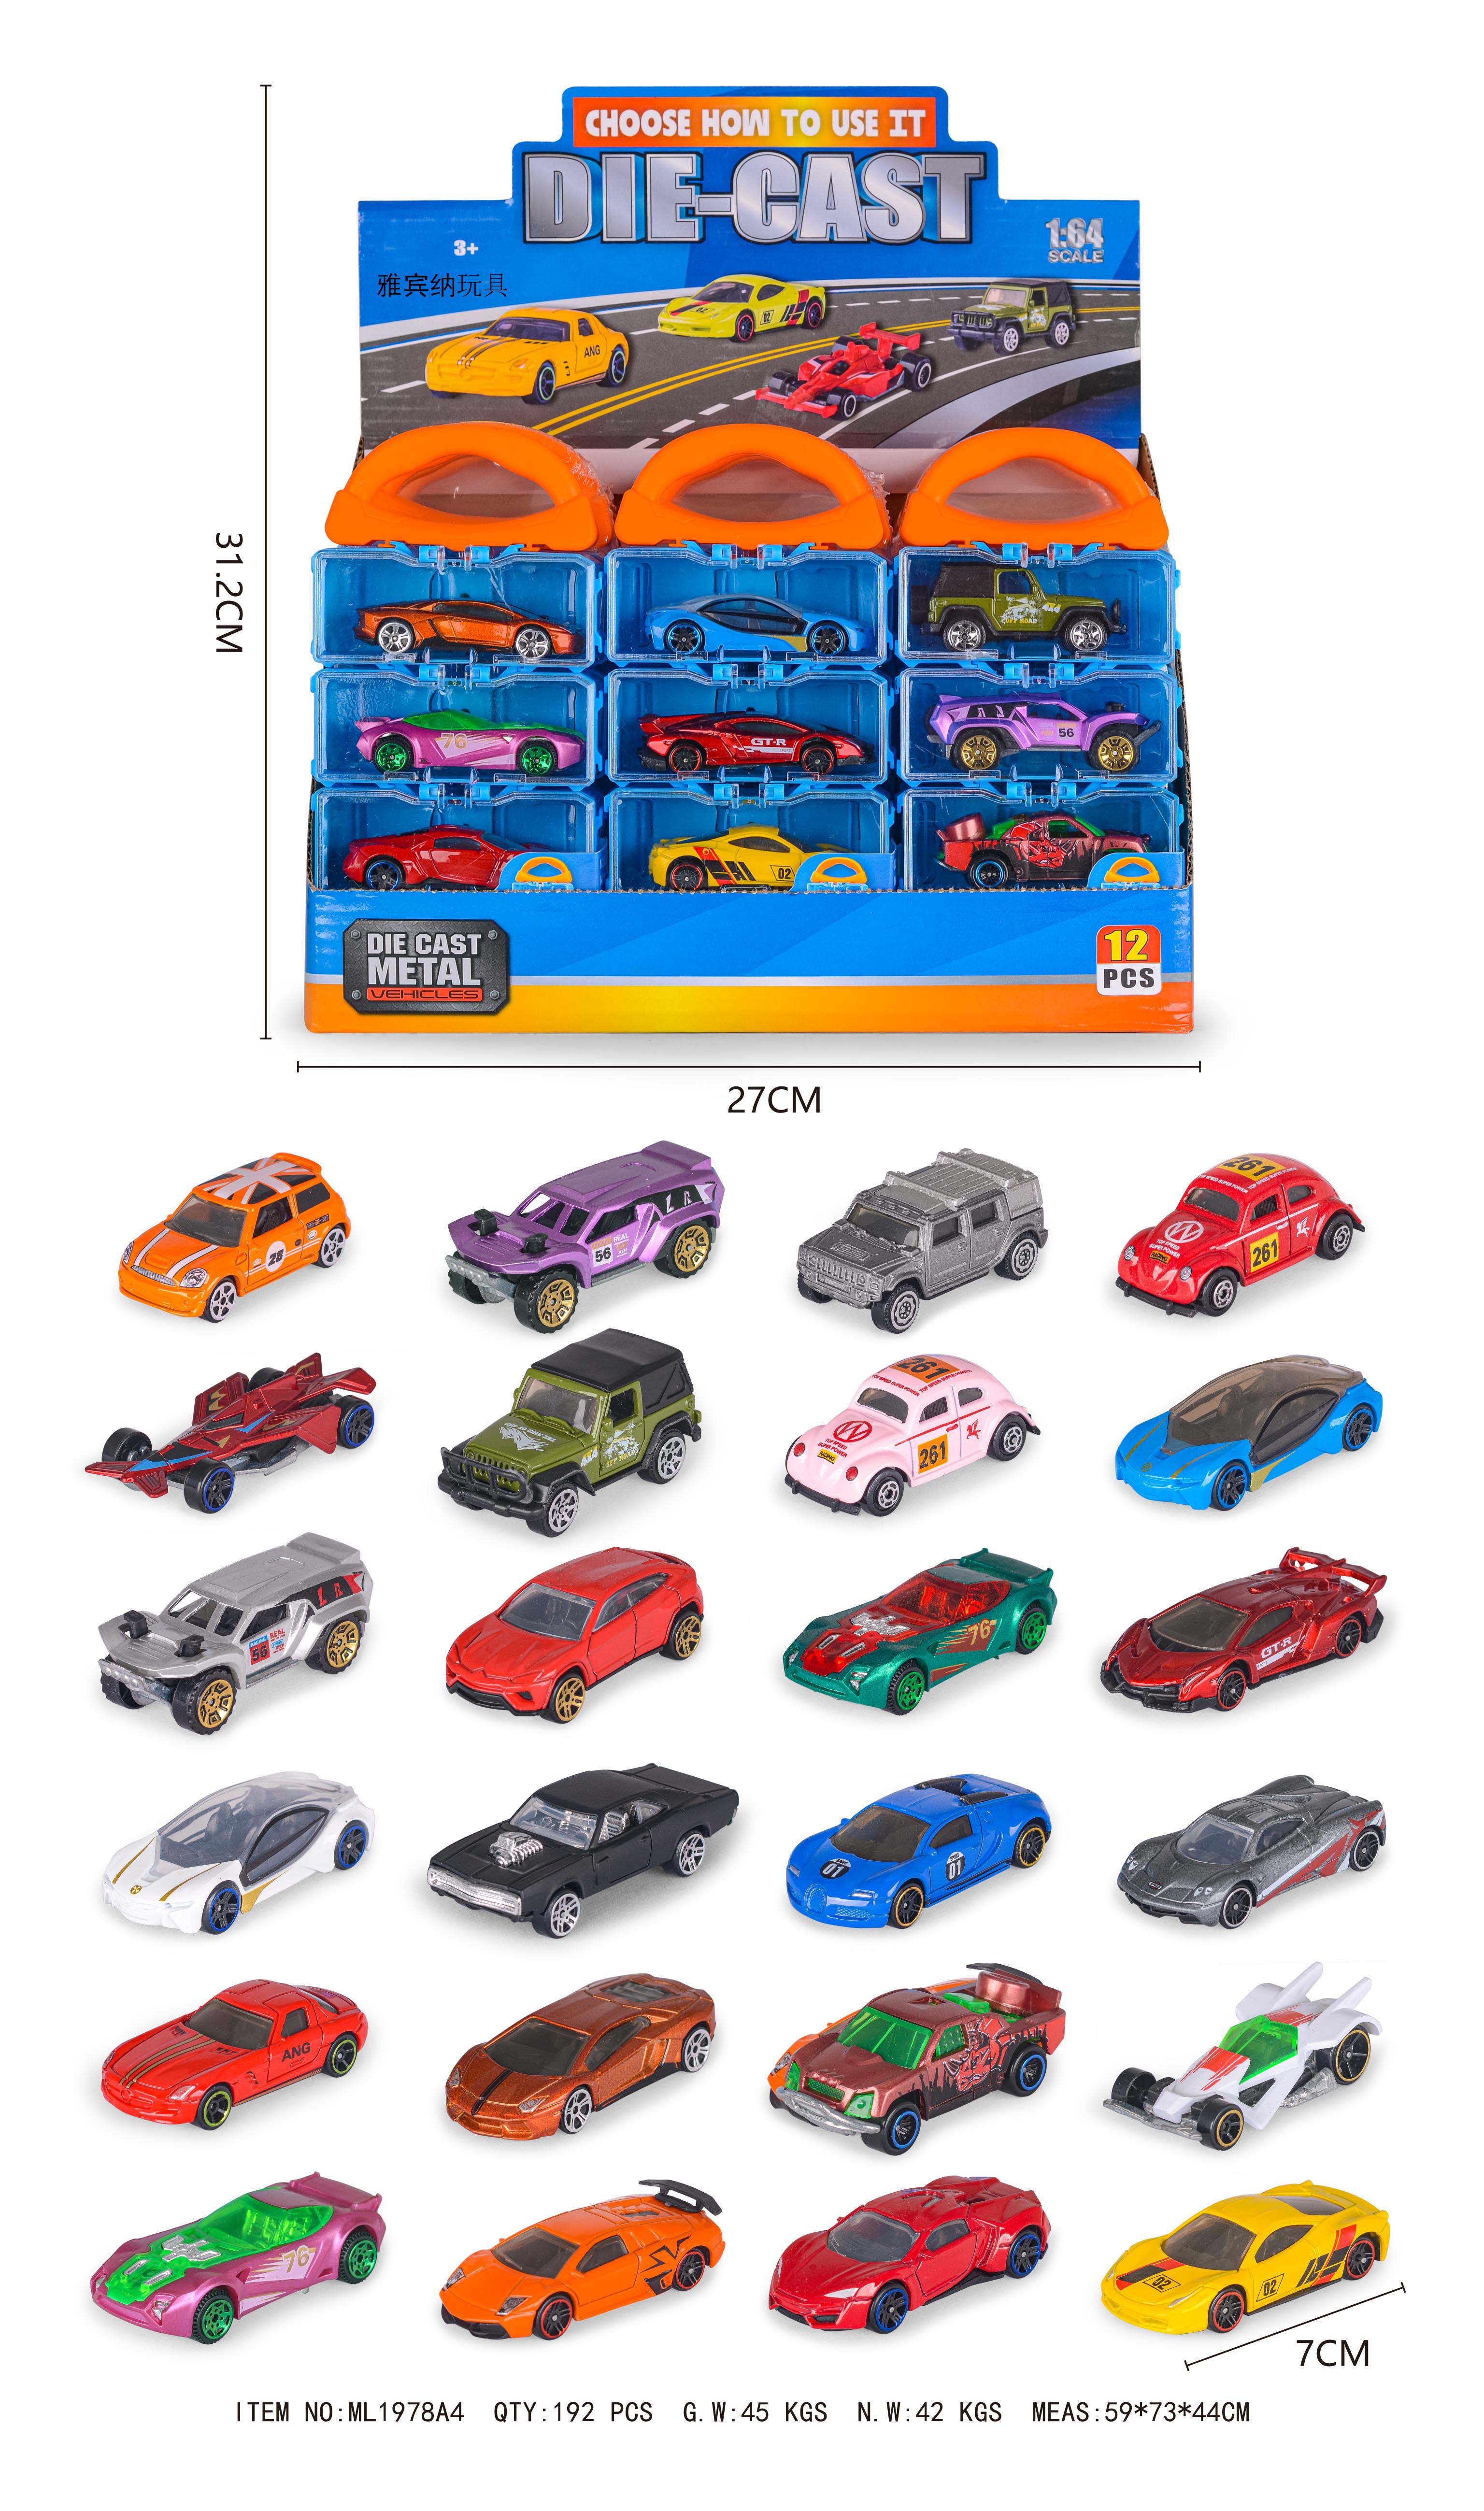 合金车玩具汽车模型 玩具车收藏爱好者首选 车模精致工艺 汽车玩具车逼真细节展示 雅宾纳玩具